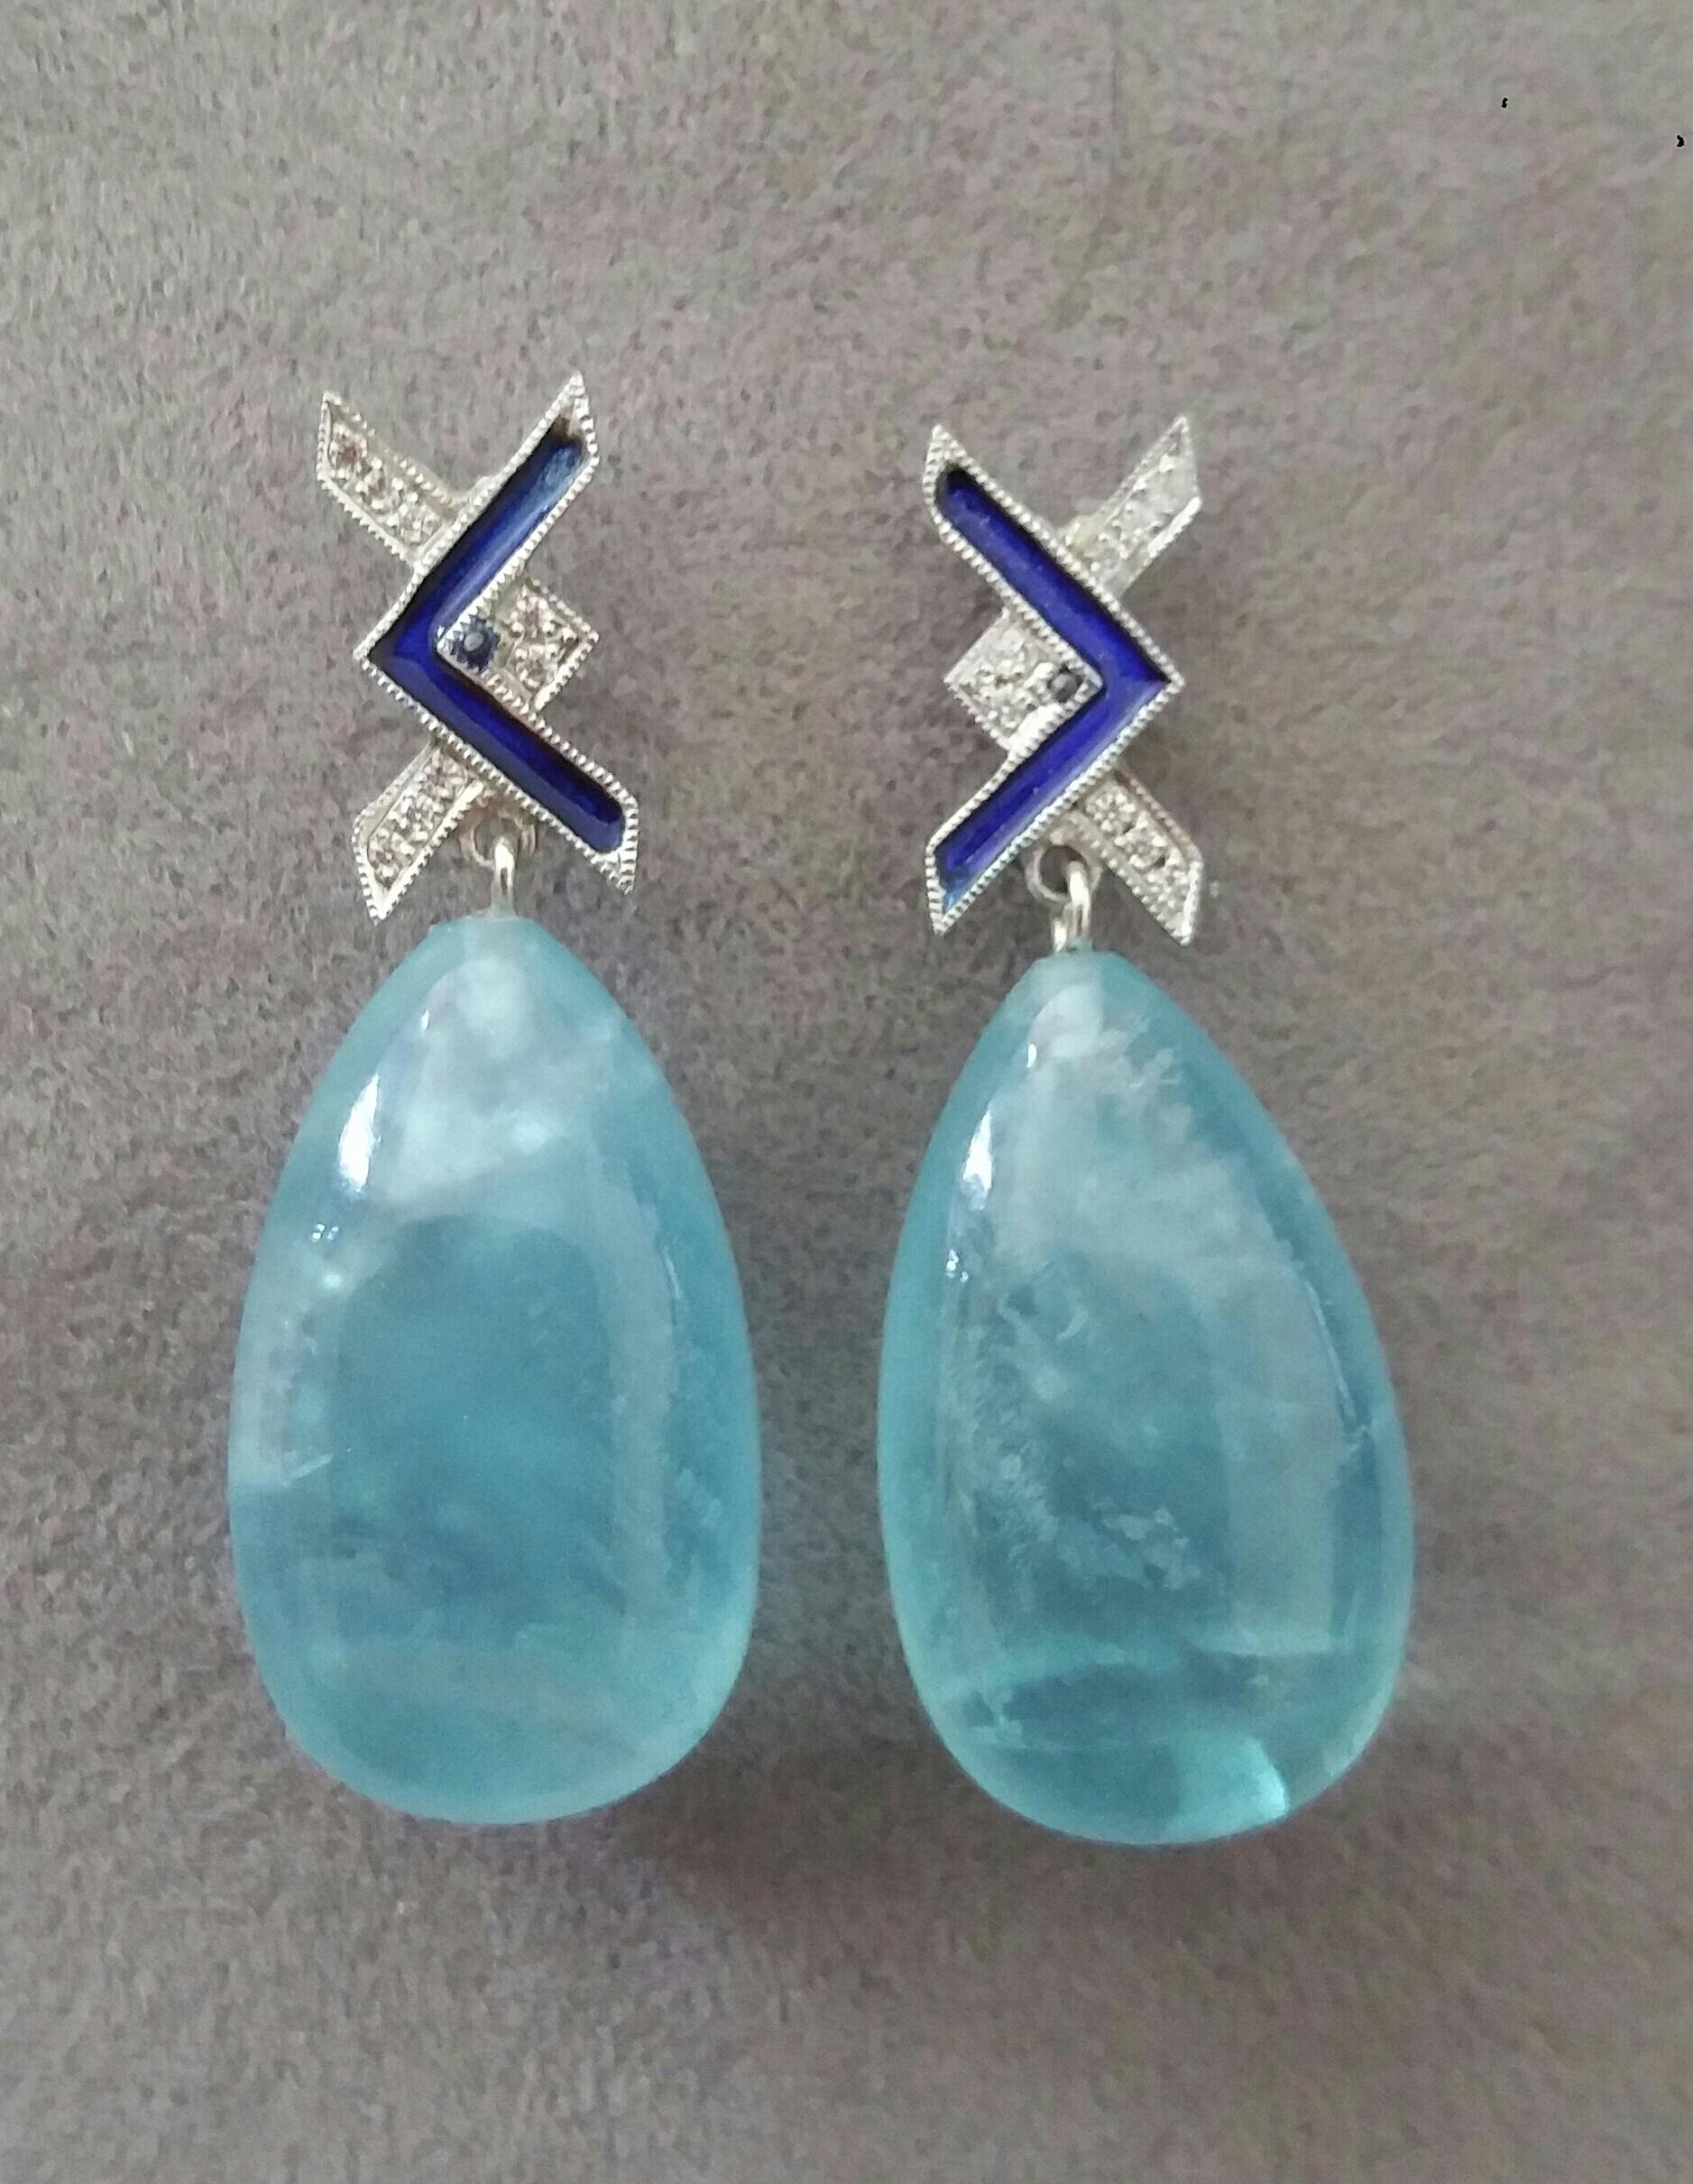 In diesen handgefertigten Ohrringen im Art Deco Stil hängen 2 sehr hochwertige Aquamarintropfen mit den Maßen 14 x 23 mm. an 2 weißen 14 kt Goldspitzen  mit 16 runden Diamanten im Vollschliff und blauen Emaillen.

1978 begann unser Atelier in